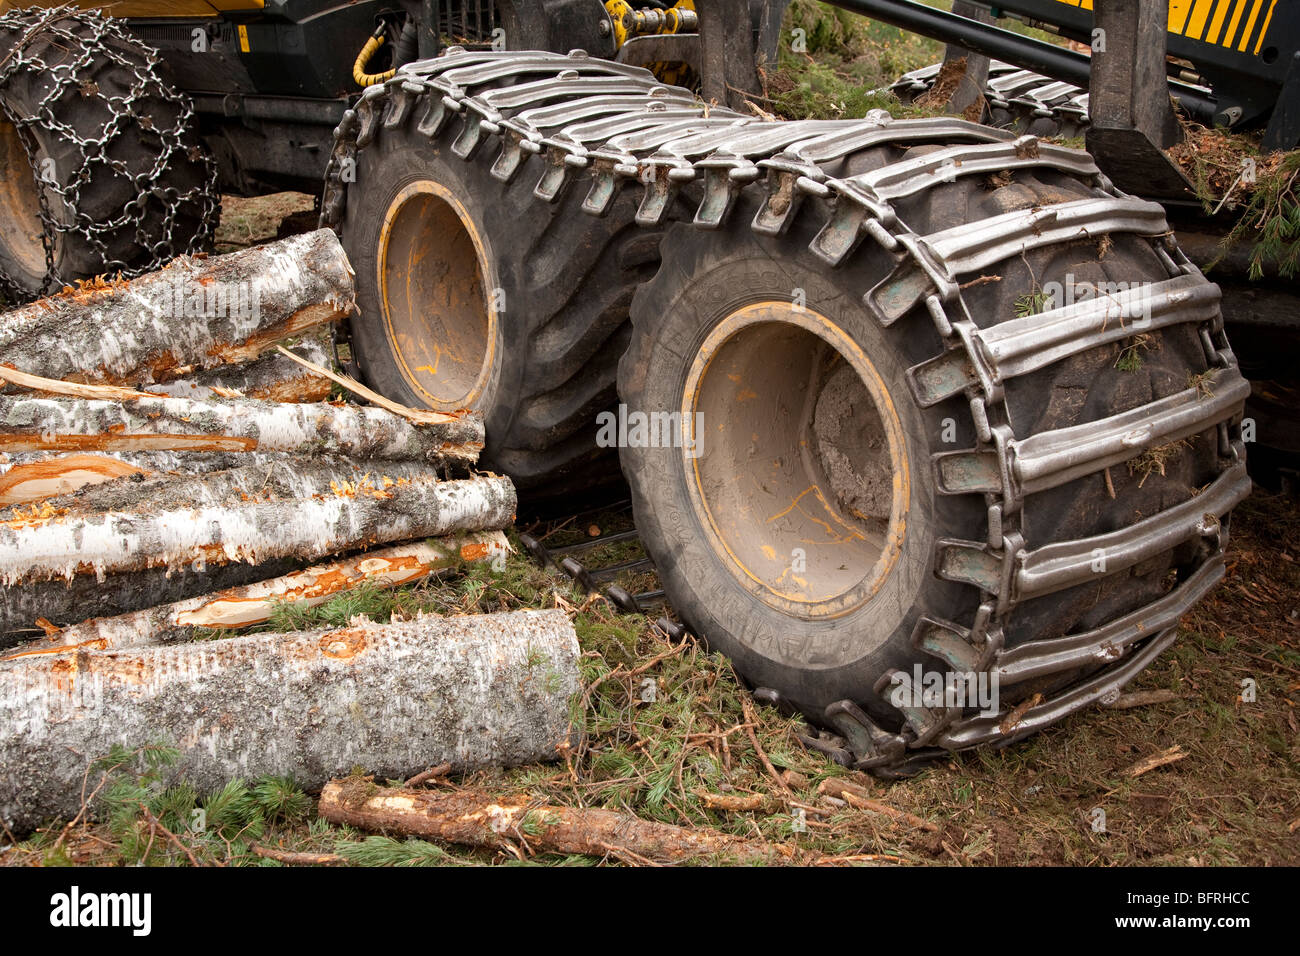 Wald harvester Reifen mit Traktion Ketten montiert Stockfotografie - Alamy